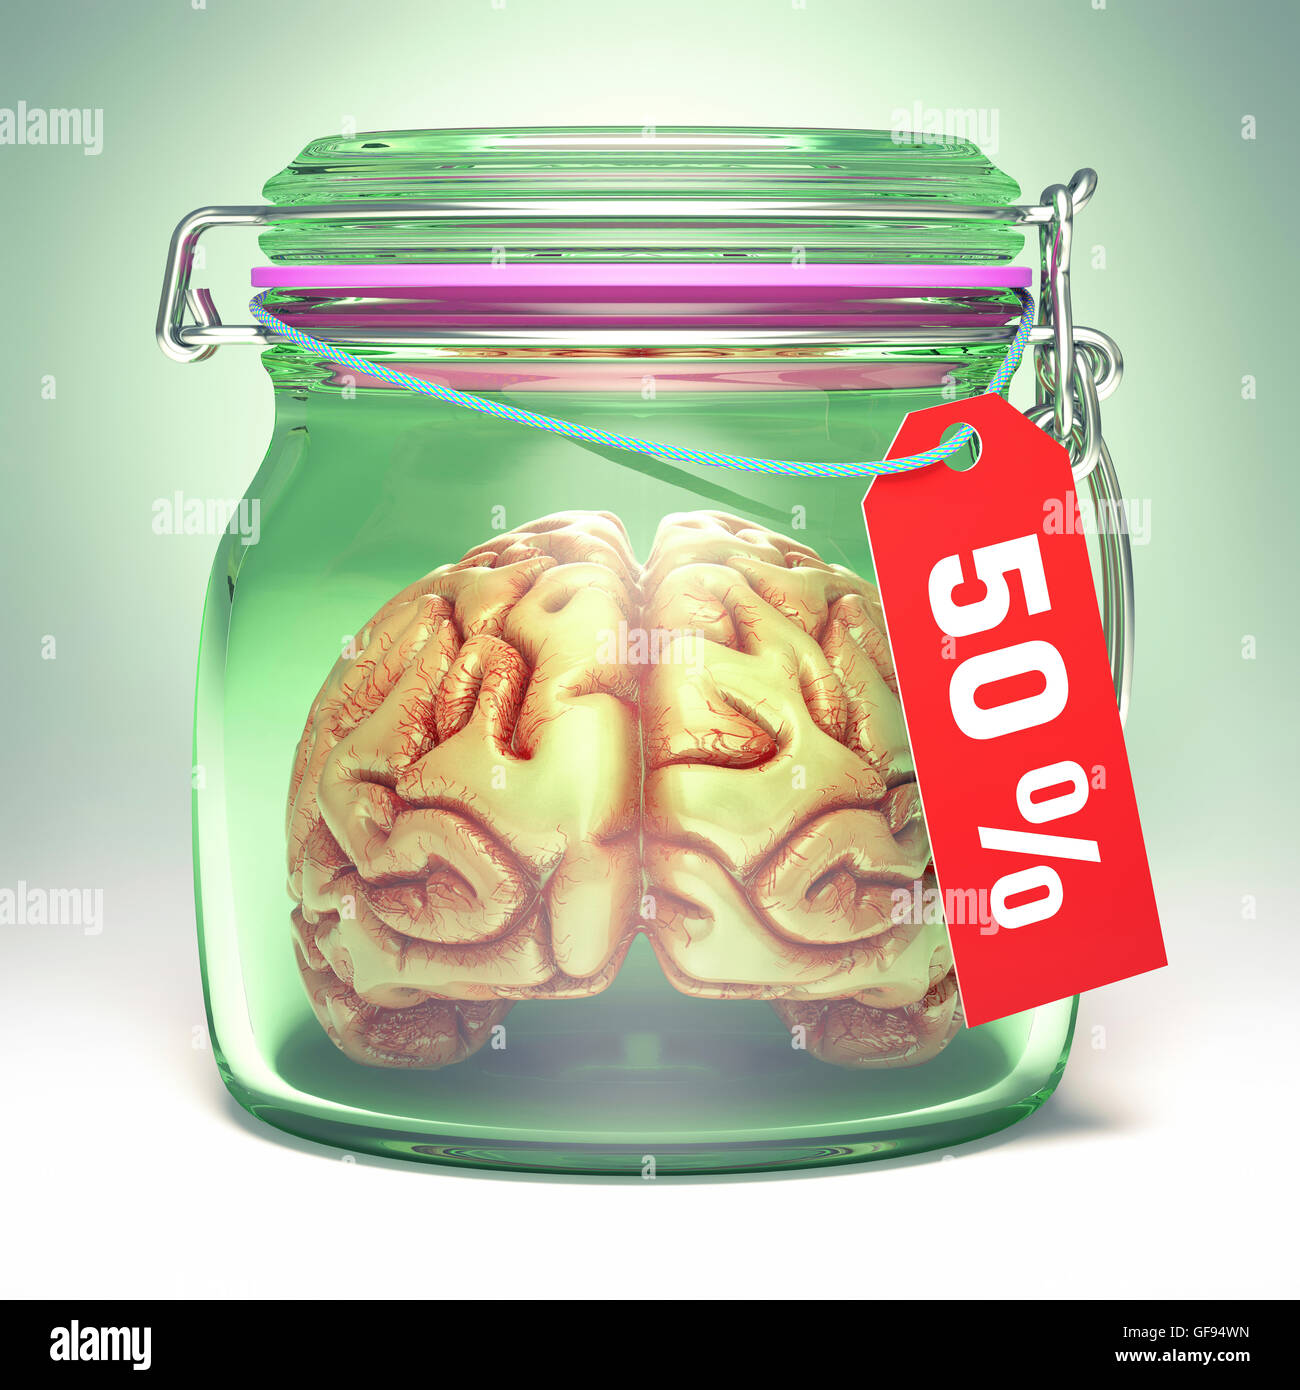 Cervello umano in un barattolo di vetro con etichetta di vendita, illustrazione. Foto Stock